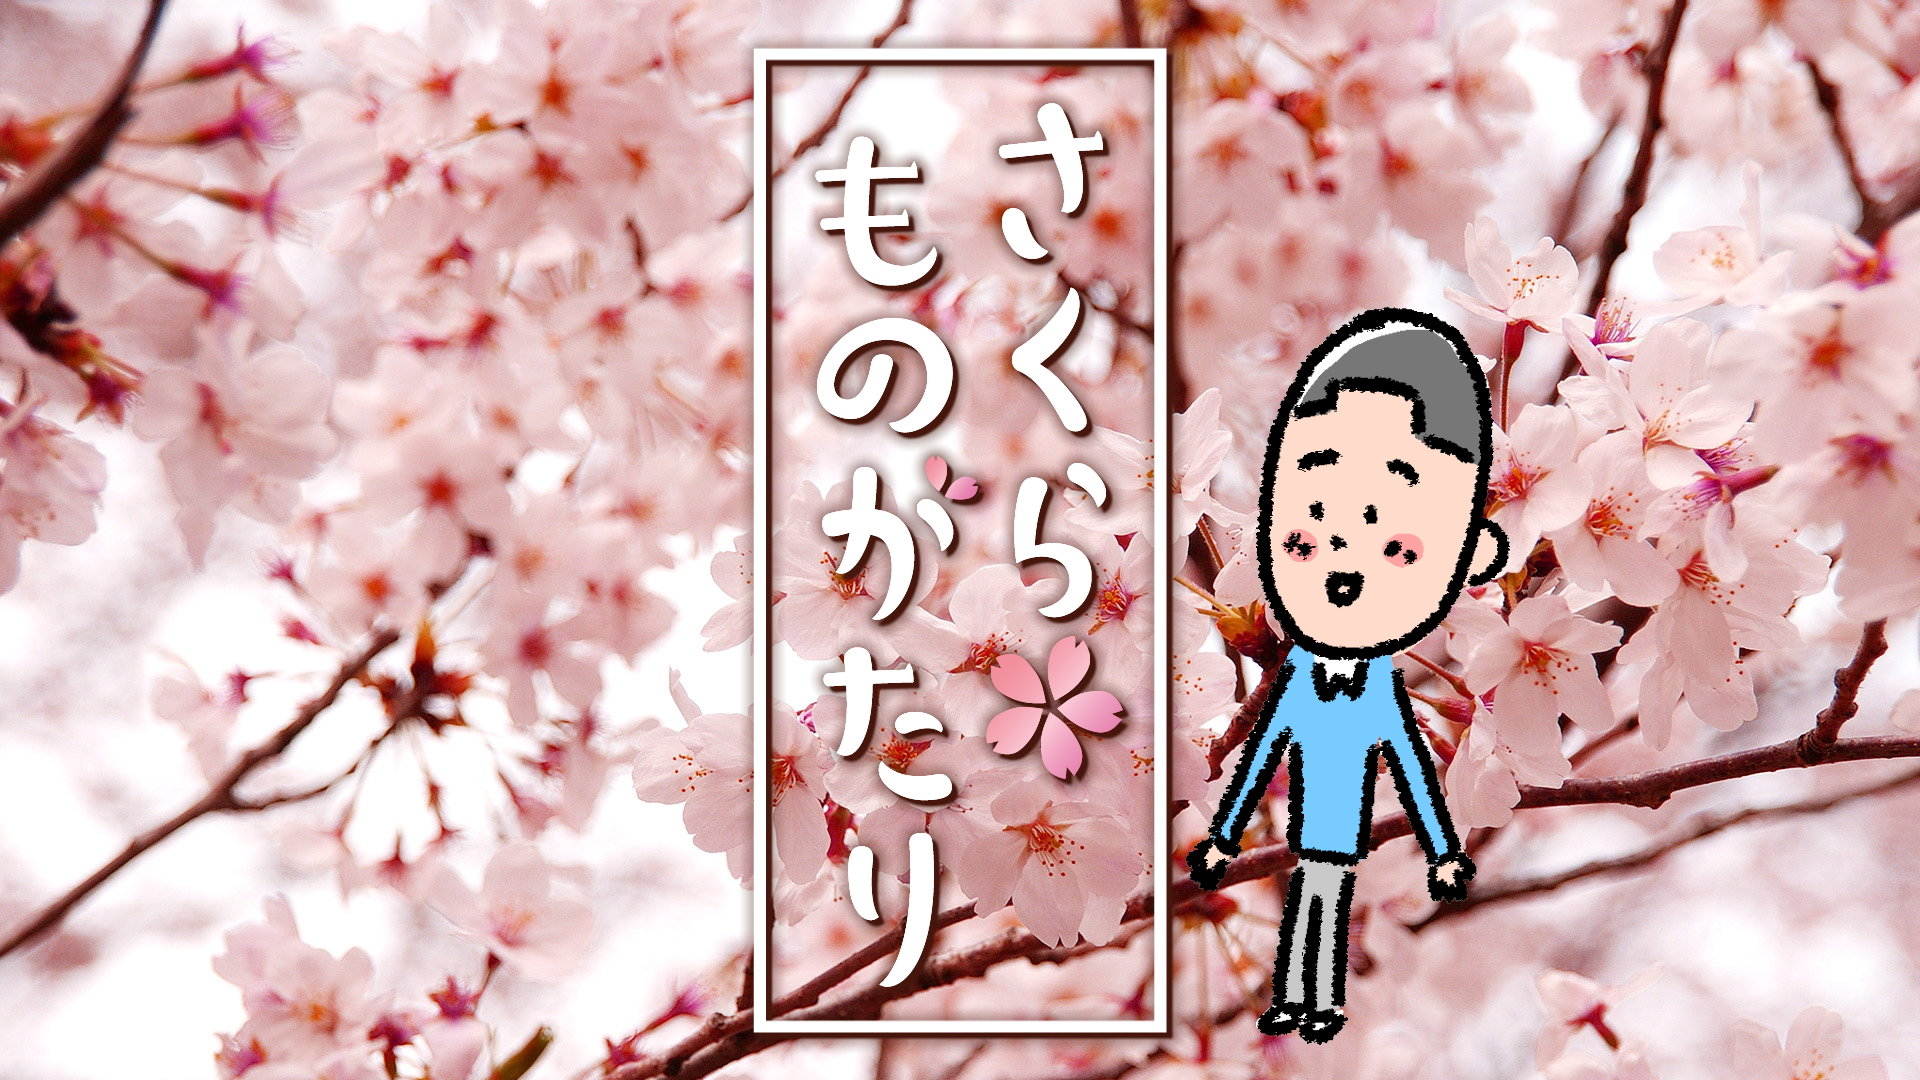 太郎ちゃんと桜